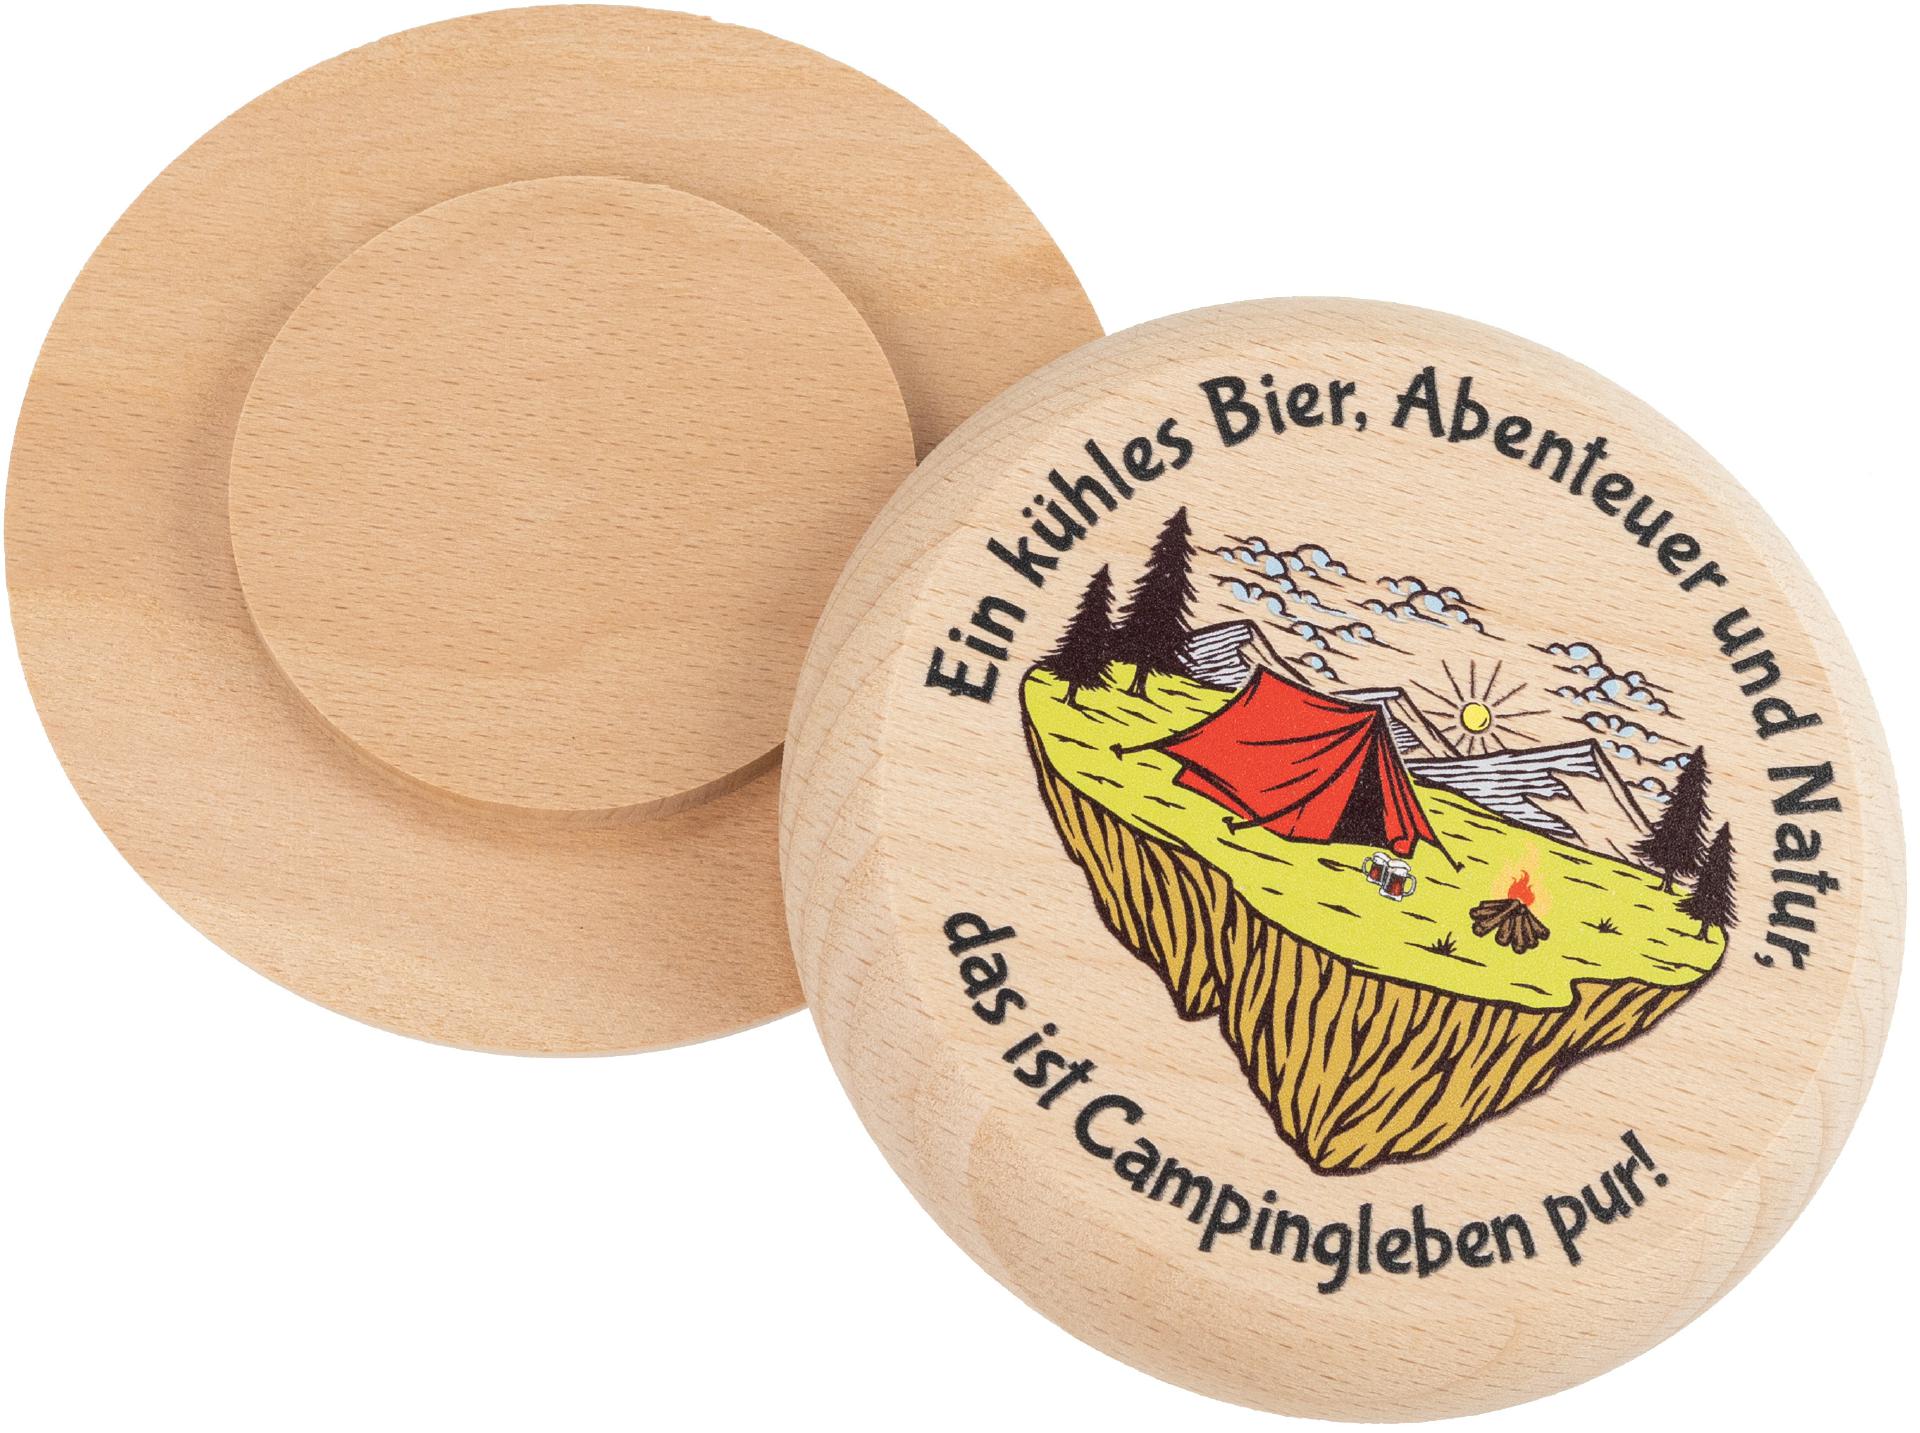 Bierdeckel aus Buchenholz mit Buntdruck Ein kuehles Bier Abenteuer und Natur das ist Campingleben pur